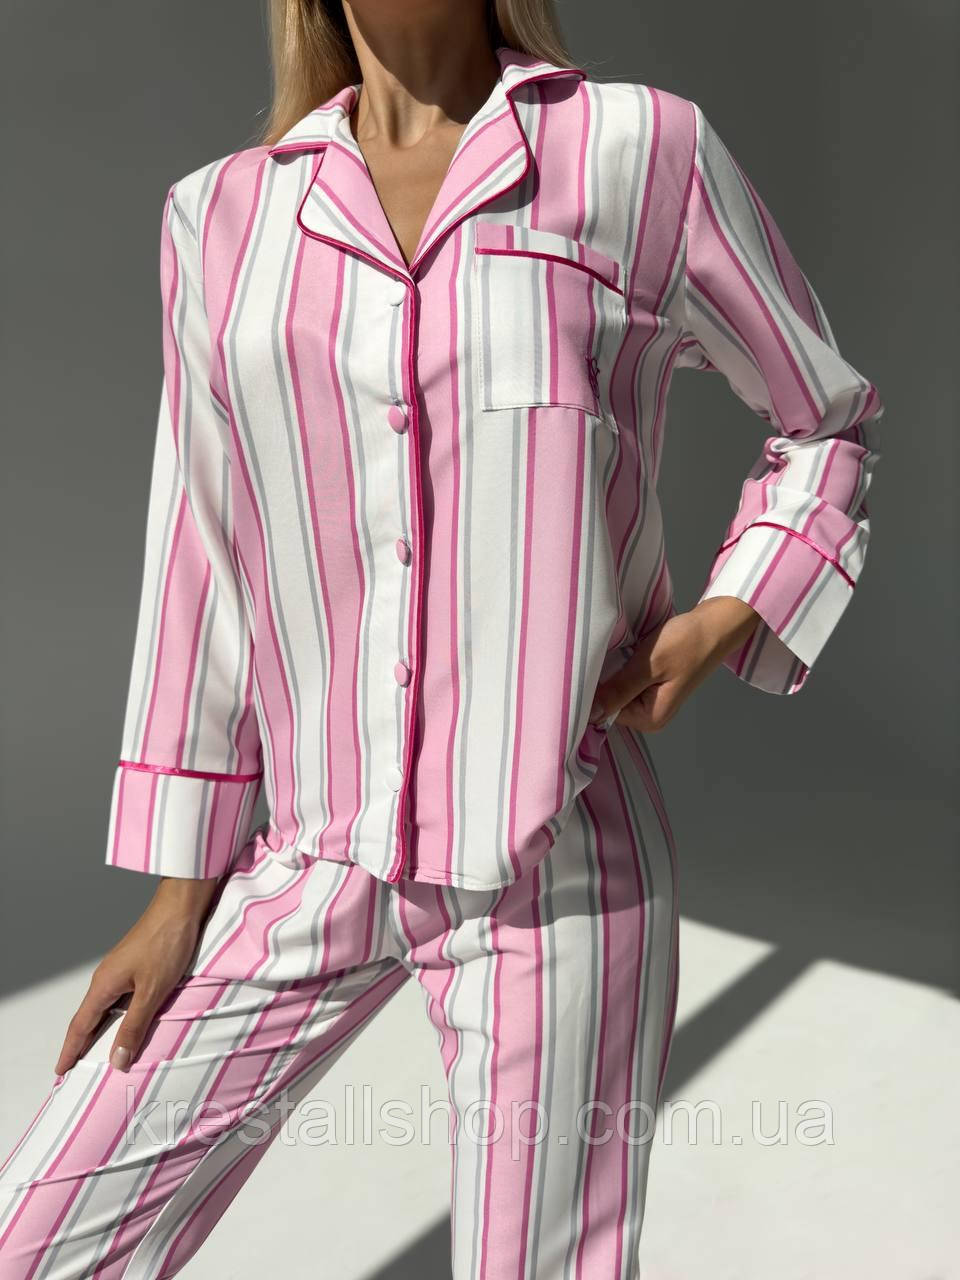 Жіноча піжама Victoria's Secret, вузька піжама, піжама в смужку біло-рожевий, нічна піжама,сорочка, штани